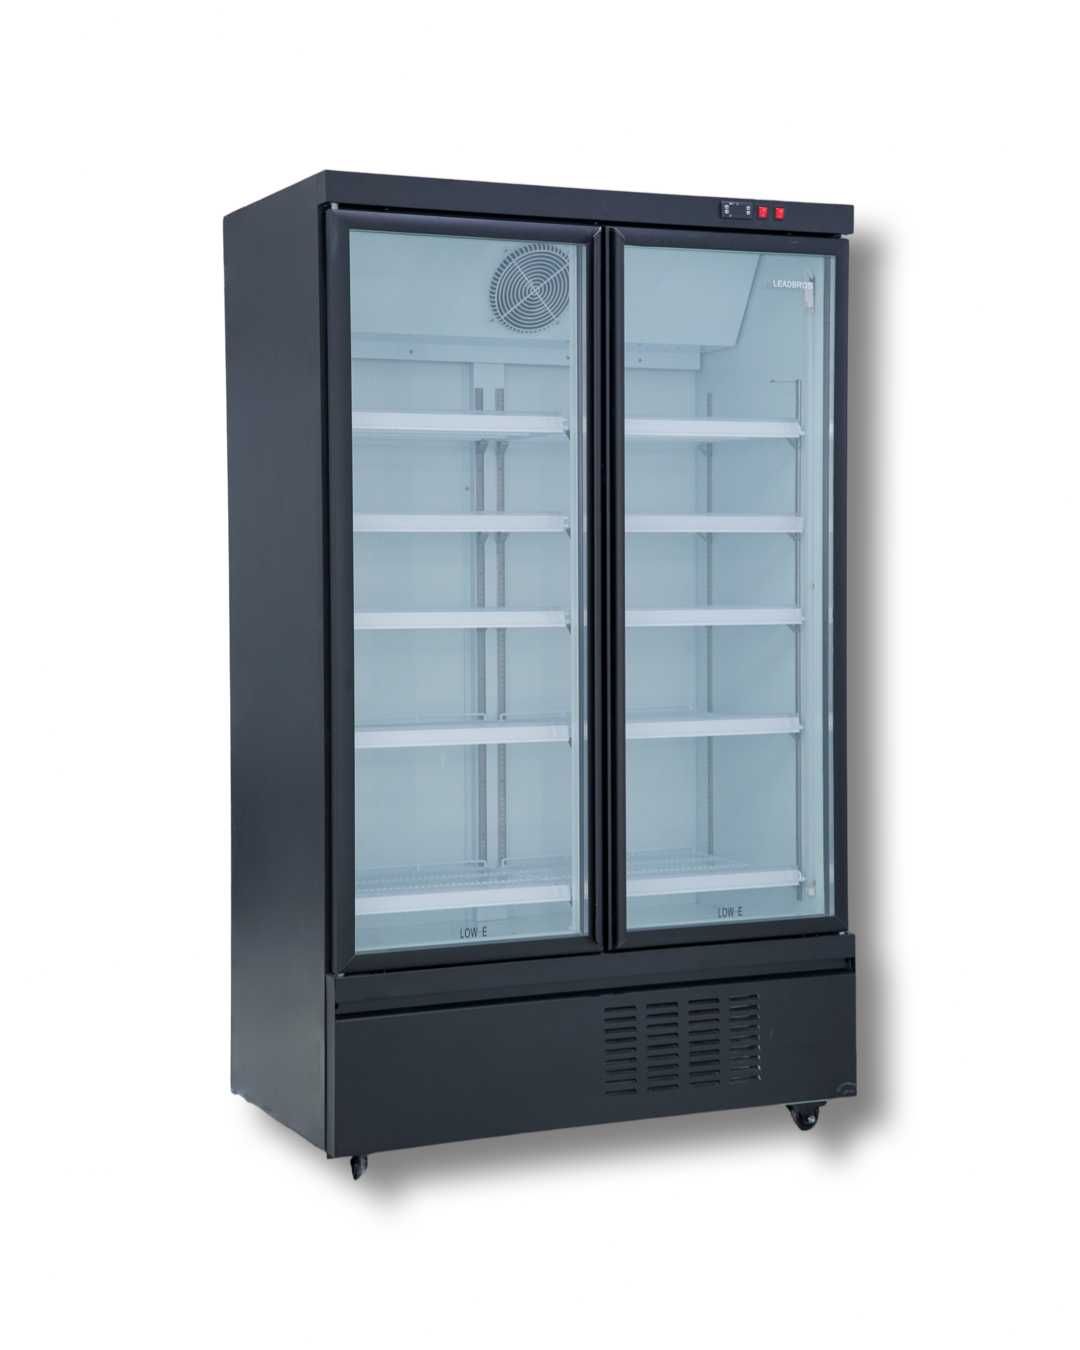 Витринный холодильник шкаф, Лучшие цены, Гарантия в Семее!